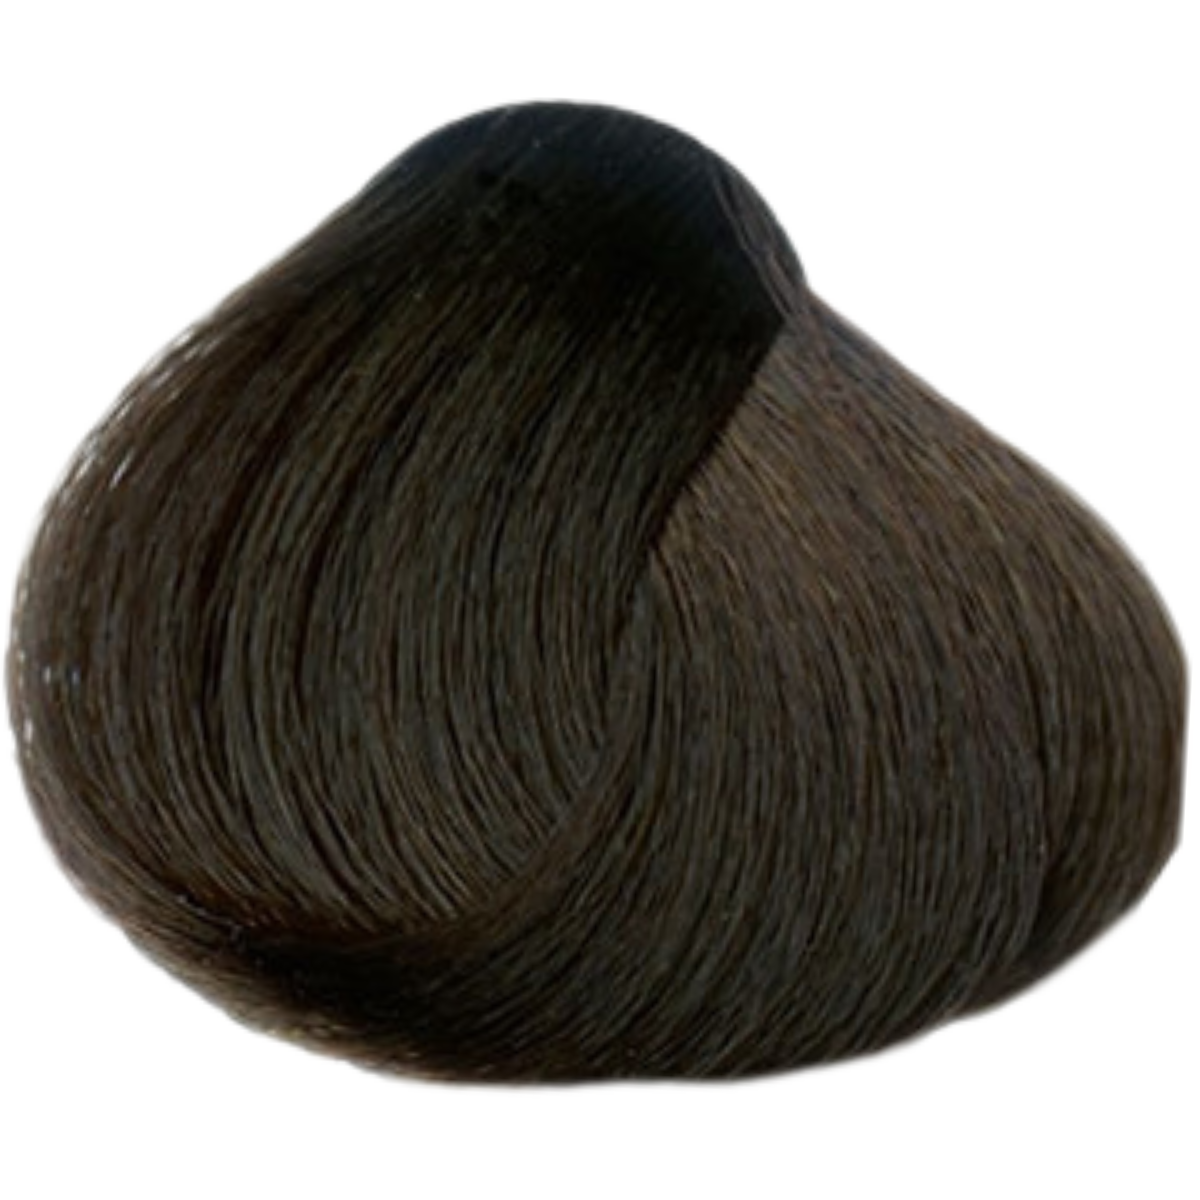 צבע שיער 5.35 LIGHT CHOCOLATE BROWN פארמויטה FarmaVita צבע לשיער 60 גרם